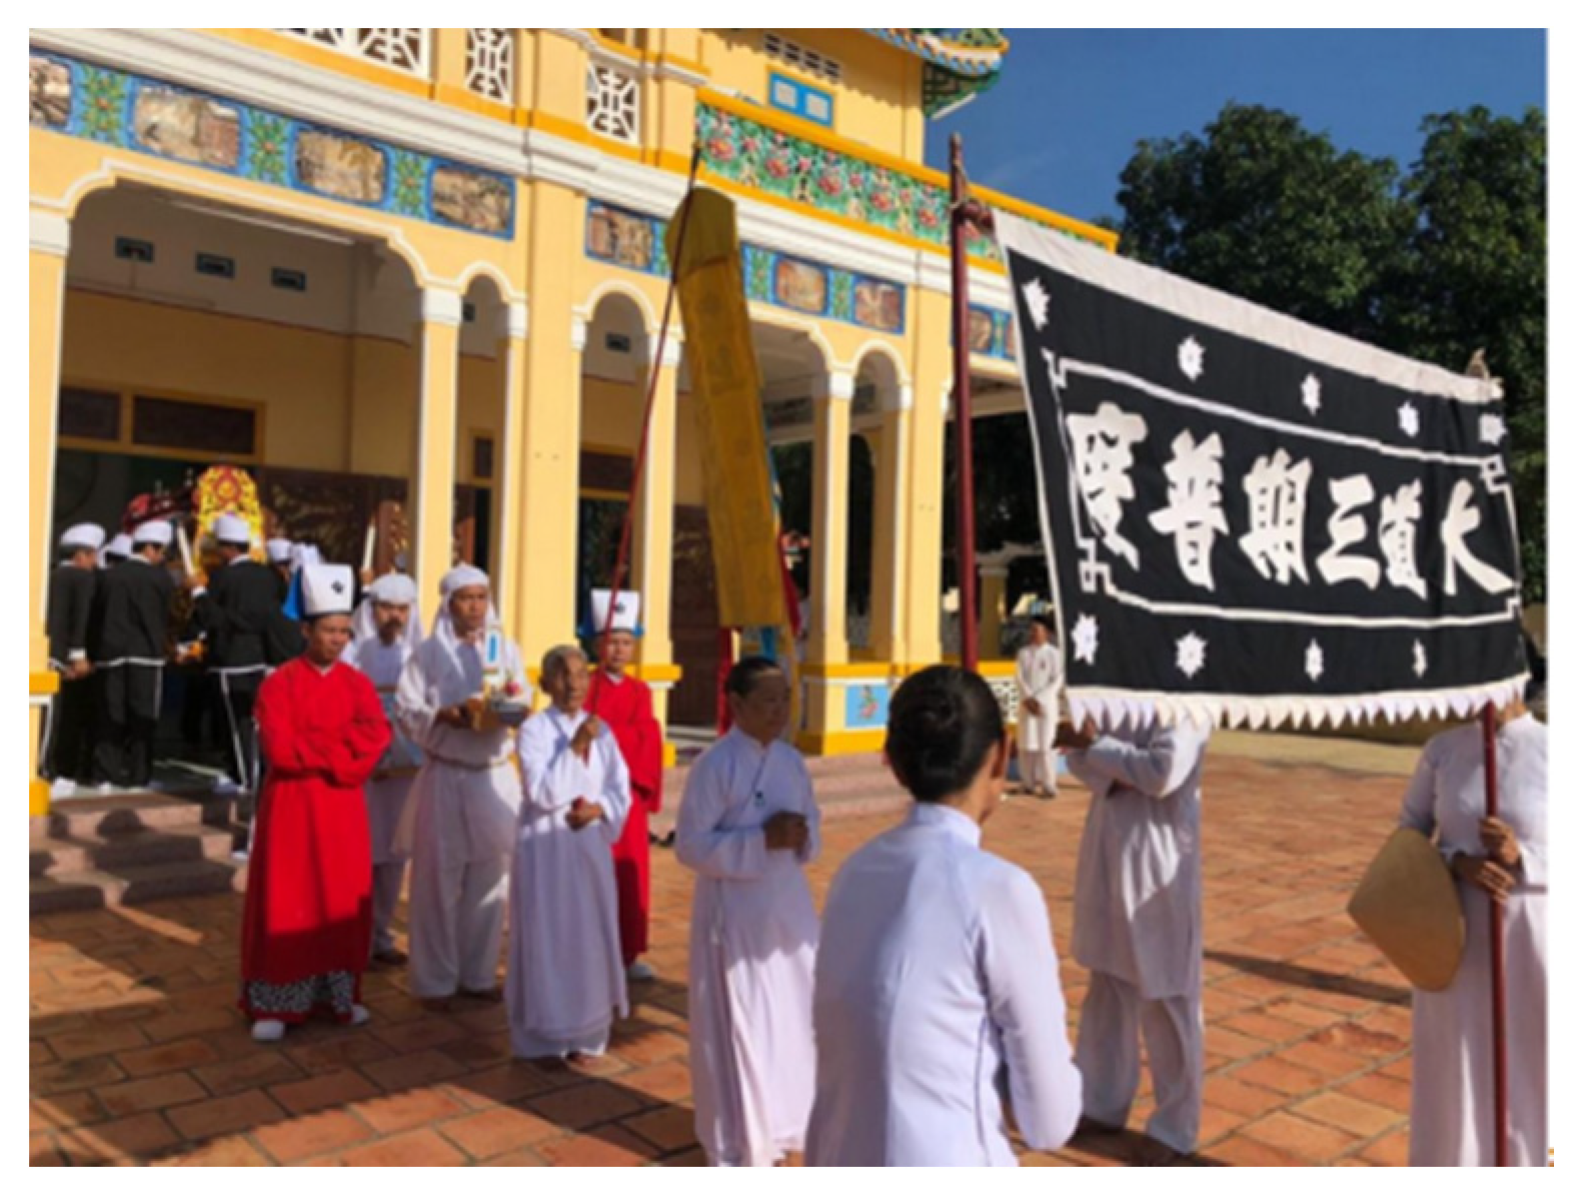 Cao Đài: Đạo Cao Đài là một trong những tôn giáo tiên tiến và tôn trọng truyền thống ở Việt Nam. Với lịch sử lâu đời và những giáo lý độc đáo, đạo Cao Đài đã thu hút được sự quan tâm của nhiều người trên toàn thế giới.